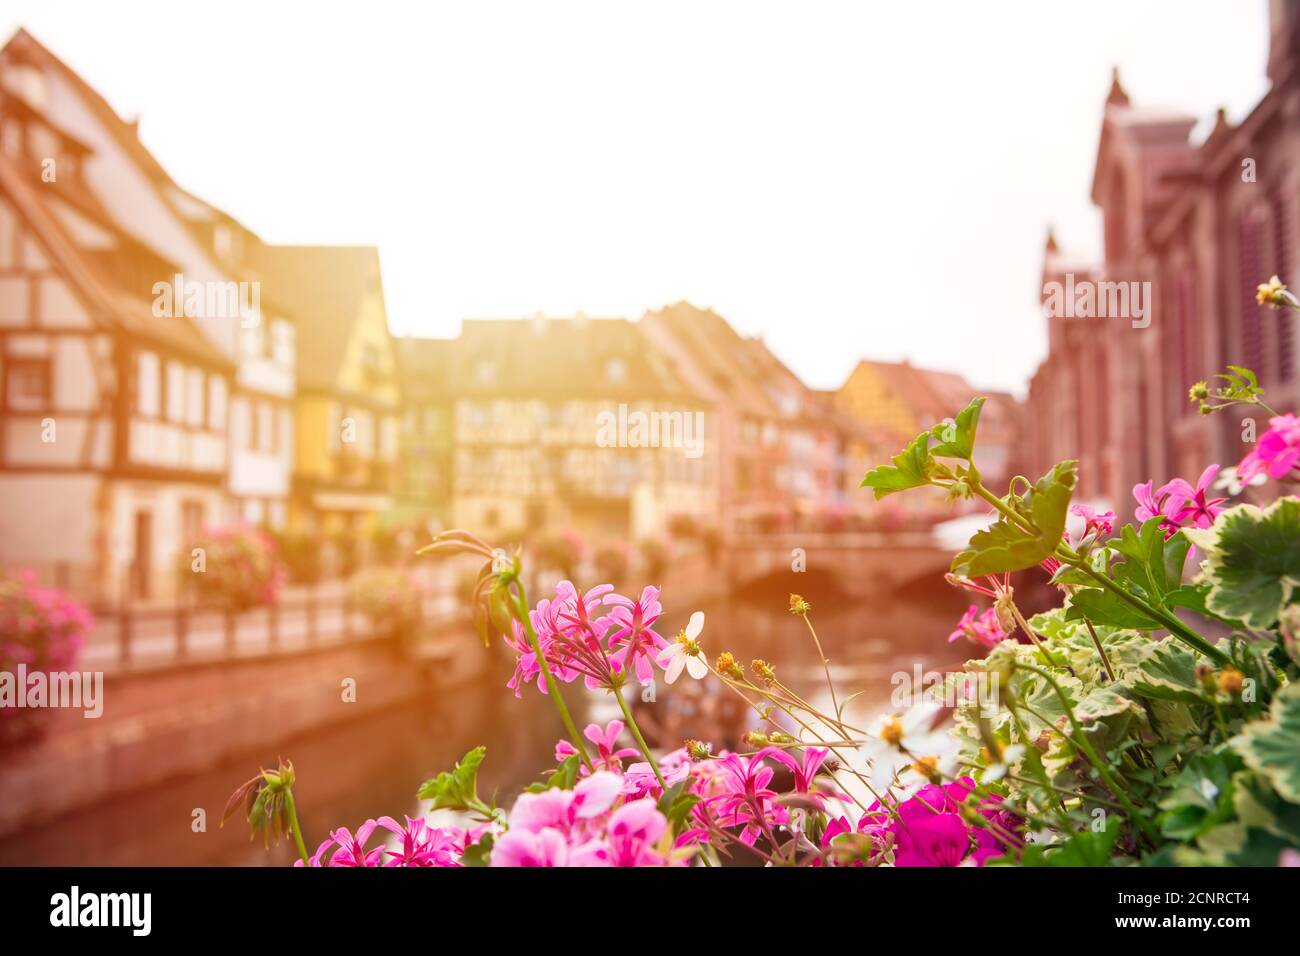 Unschärfer Hintergrund mit landschaftlich reizvoller französischer Altstadt-Architektur und Wasserkanal. Blick auf verschwommenes Colmar Dorf mit Blumen im Vordergrund. Elsass, Stockfoto